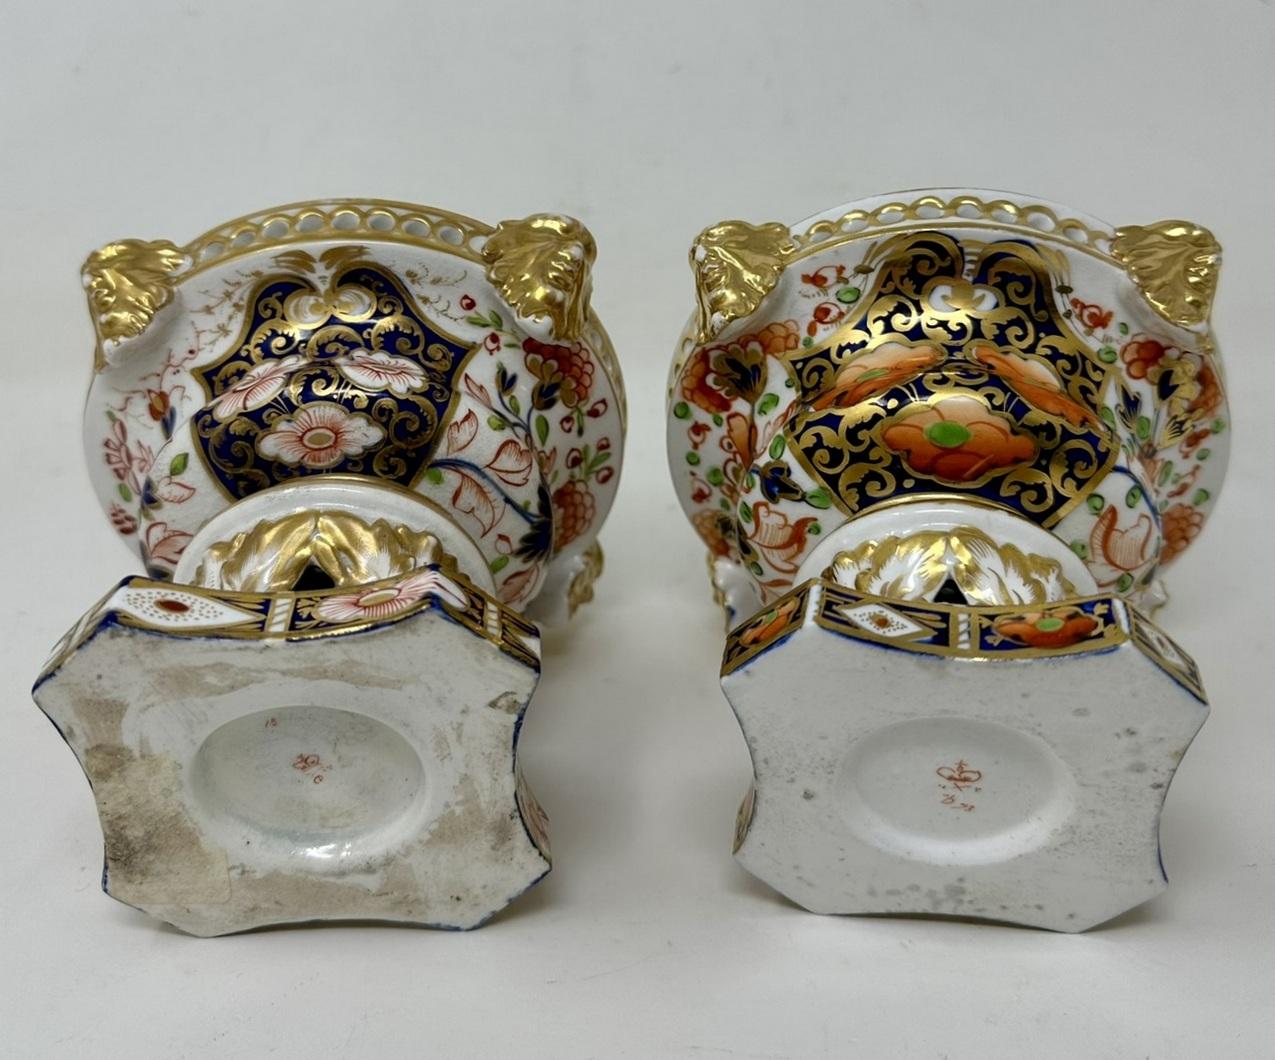 Antique Regency English Crown Derby Pair Urns Vases Pot Pourri Centerpieces 1815 For Sale 5